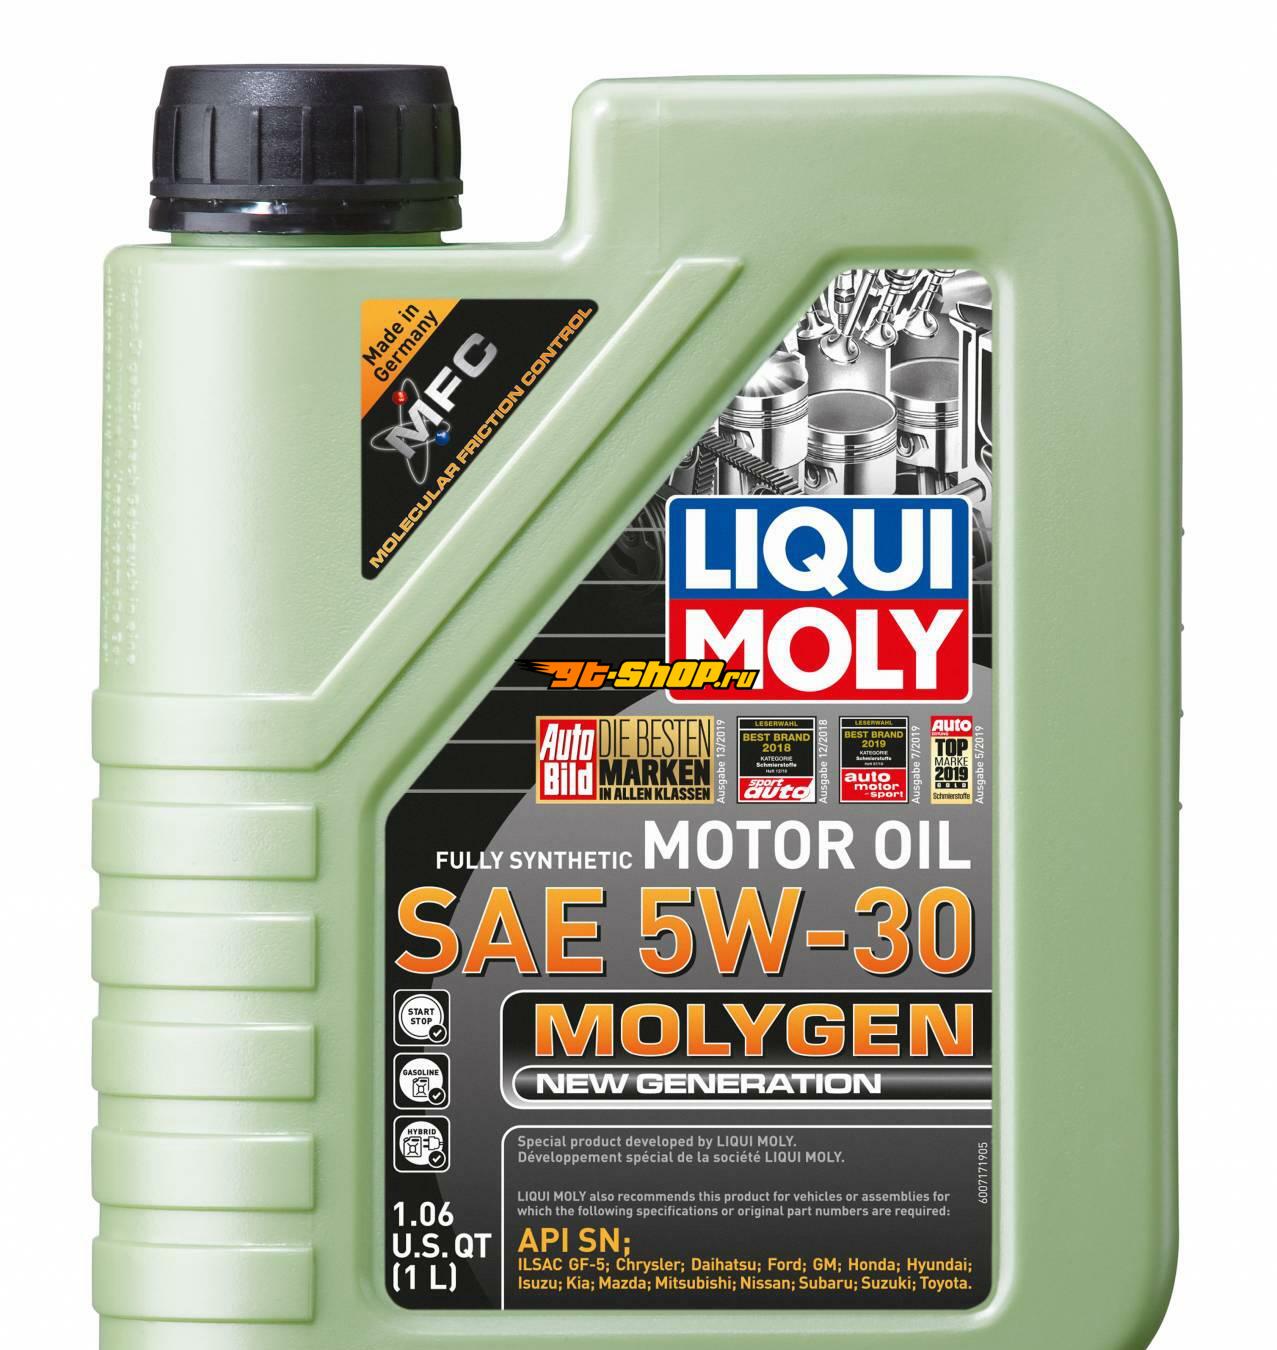 Купить масло ликви моли молиген. НС-синтетическое моторное масло Molygen New Generation 5w-30 1л. Моторное масло 10w30 Ликви моли молиген. Масло Ликви моли 5w30 молиген 5l. Ликвимол масло моторное 5 20.